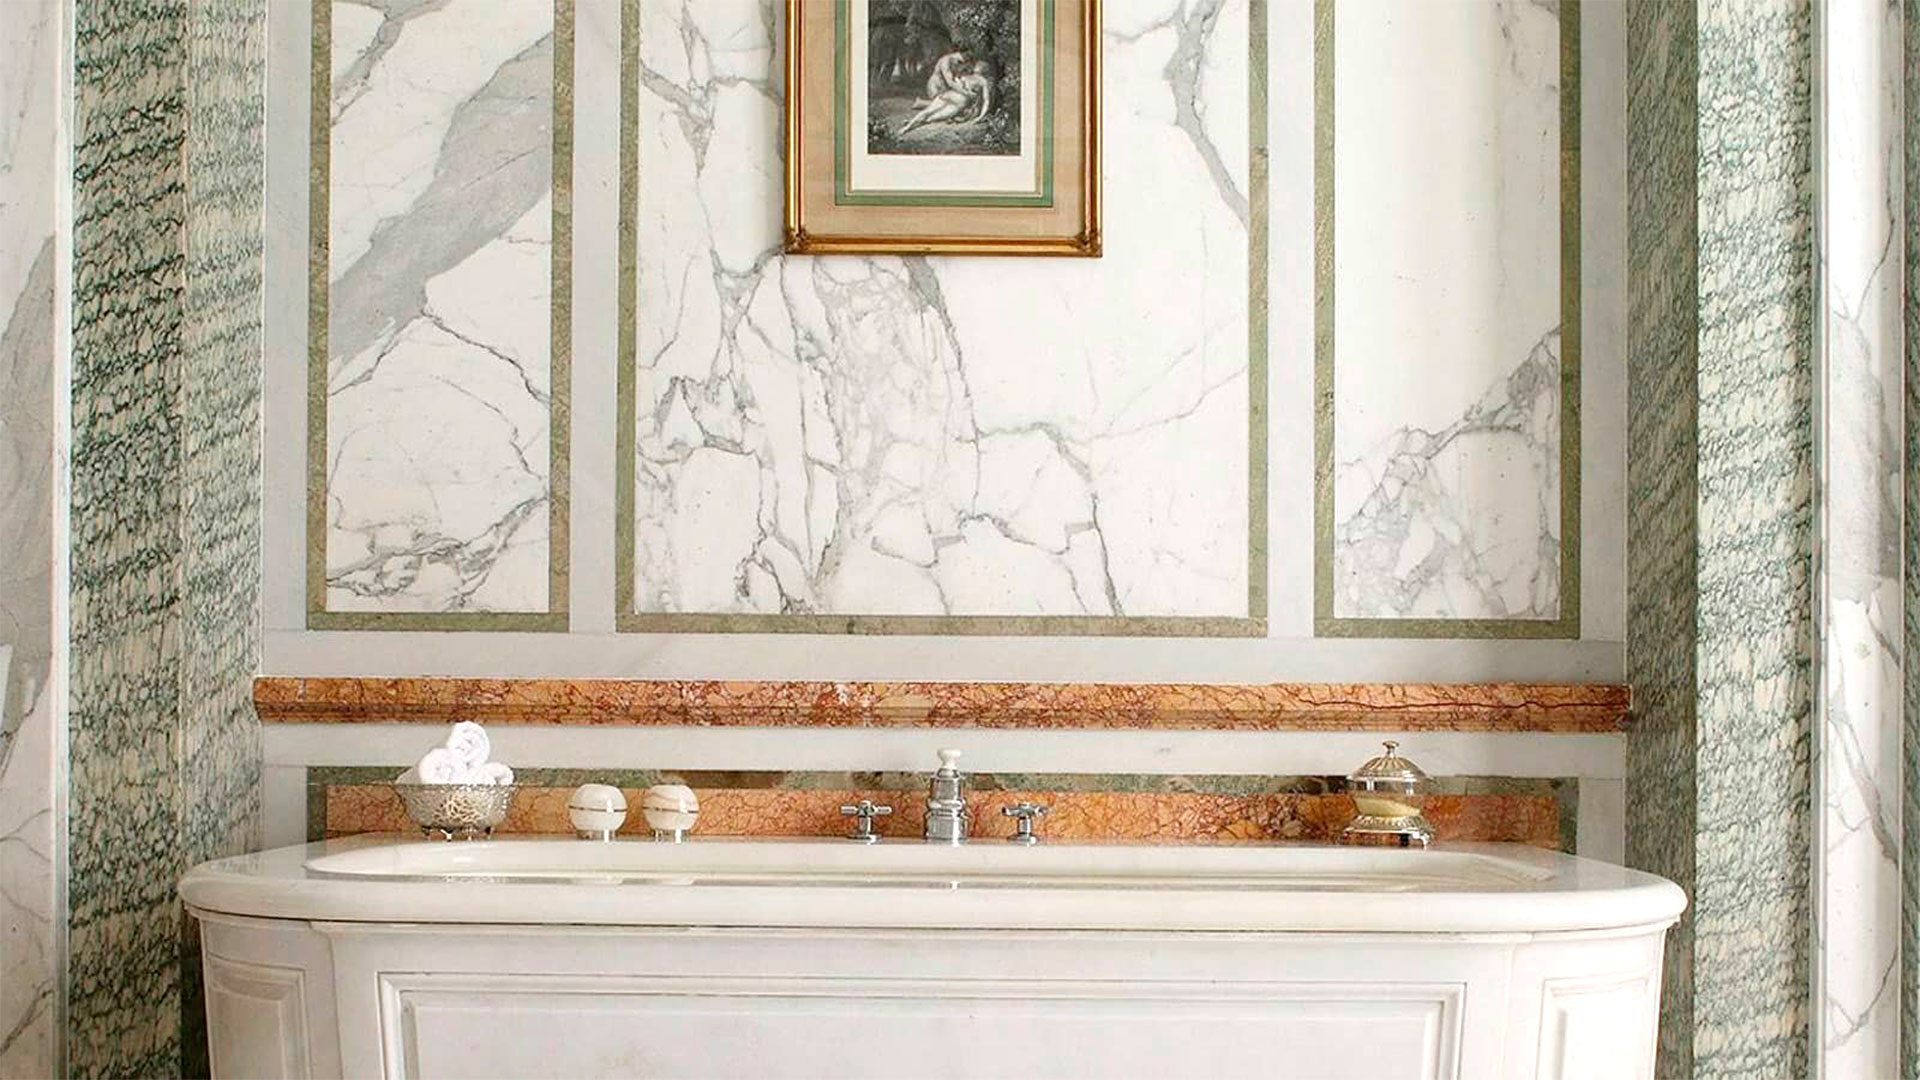 La lujosa bañera del baño de la habitación en la que se hospedan Robert De Niro, su pareja y su hija